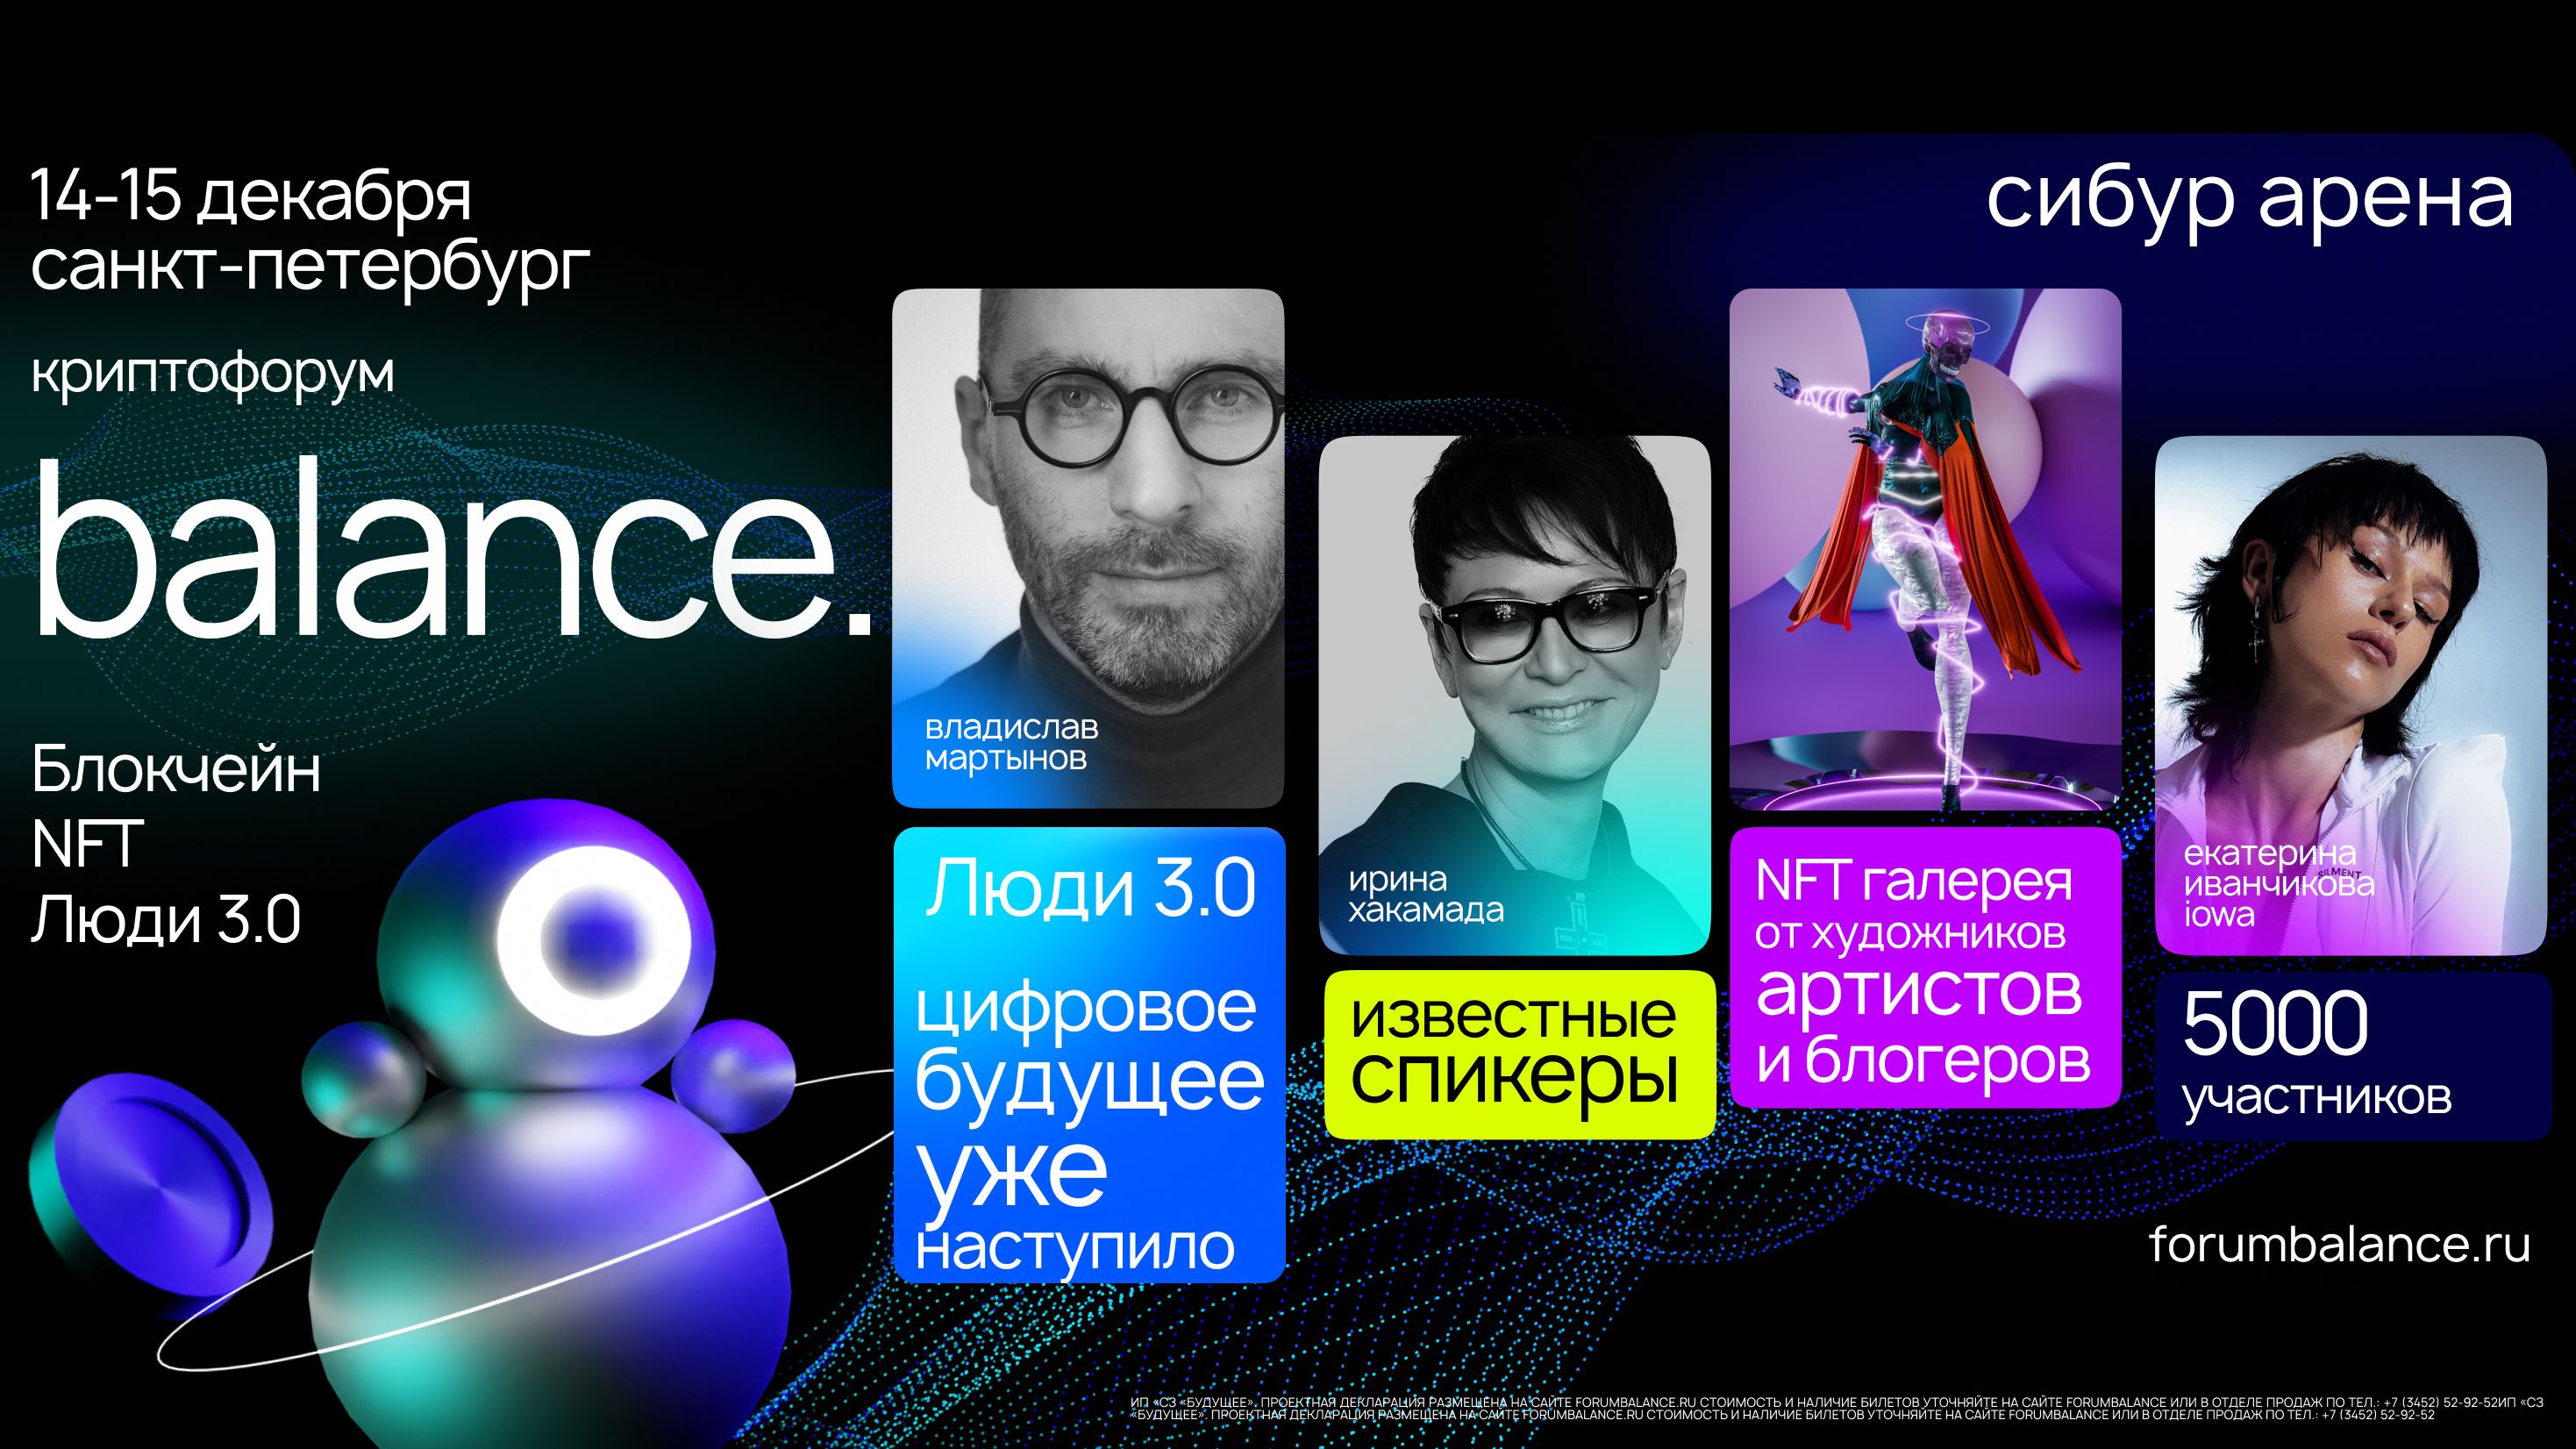 Криптофорум Balance пройдет в Санкт-Петербурге в декабре